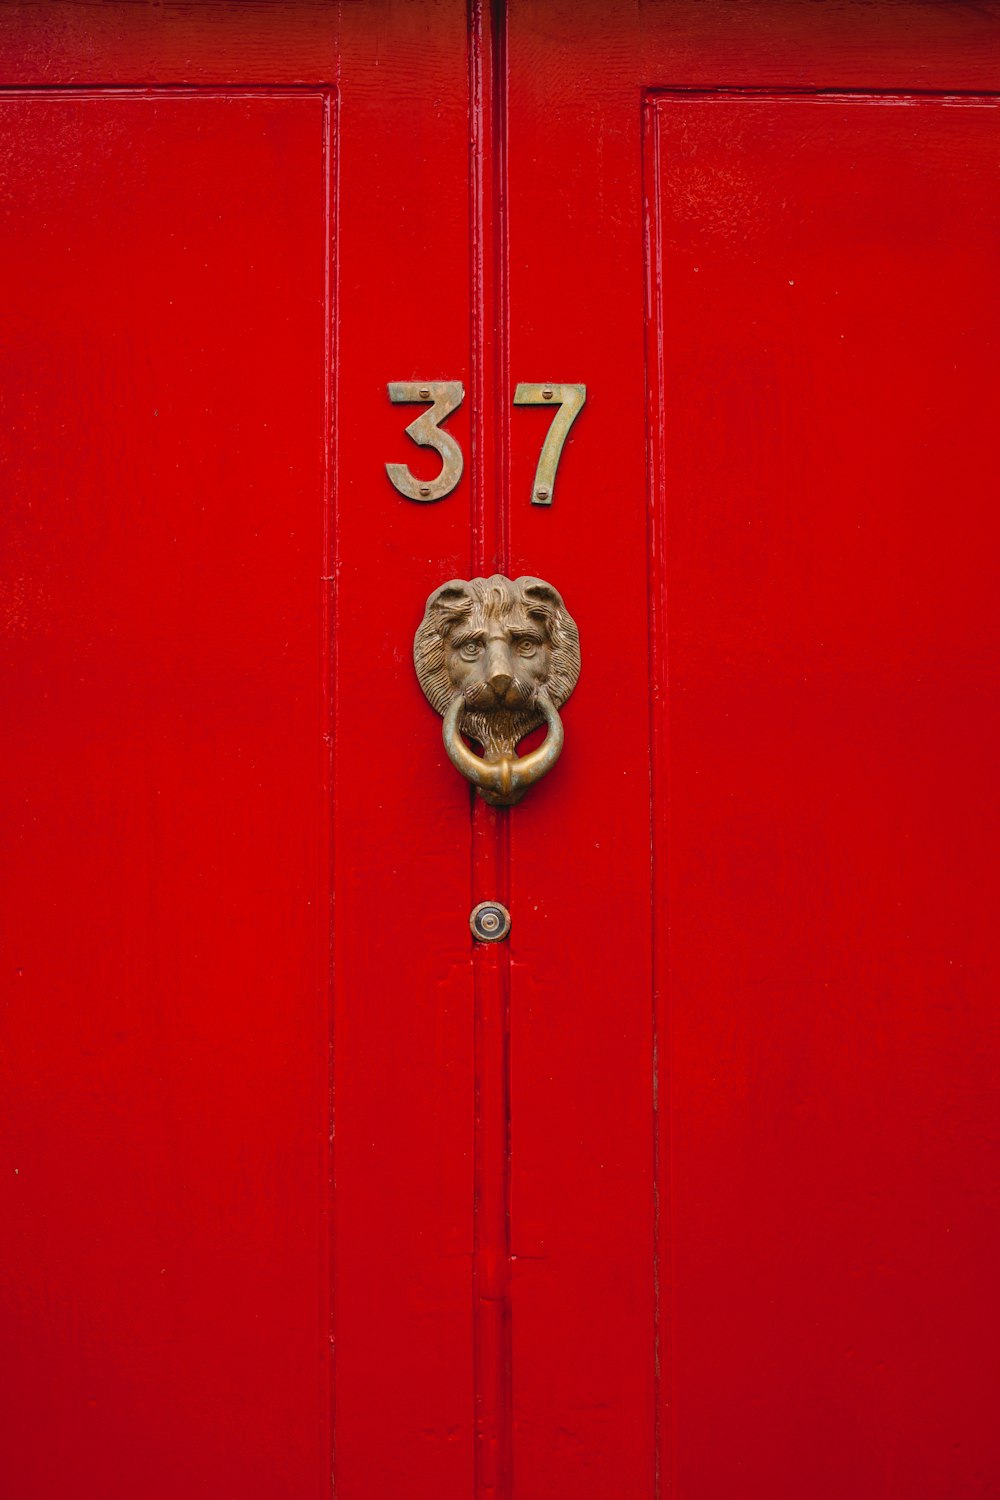 red wooden door with number 37